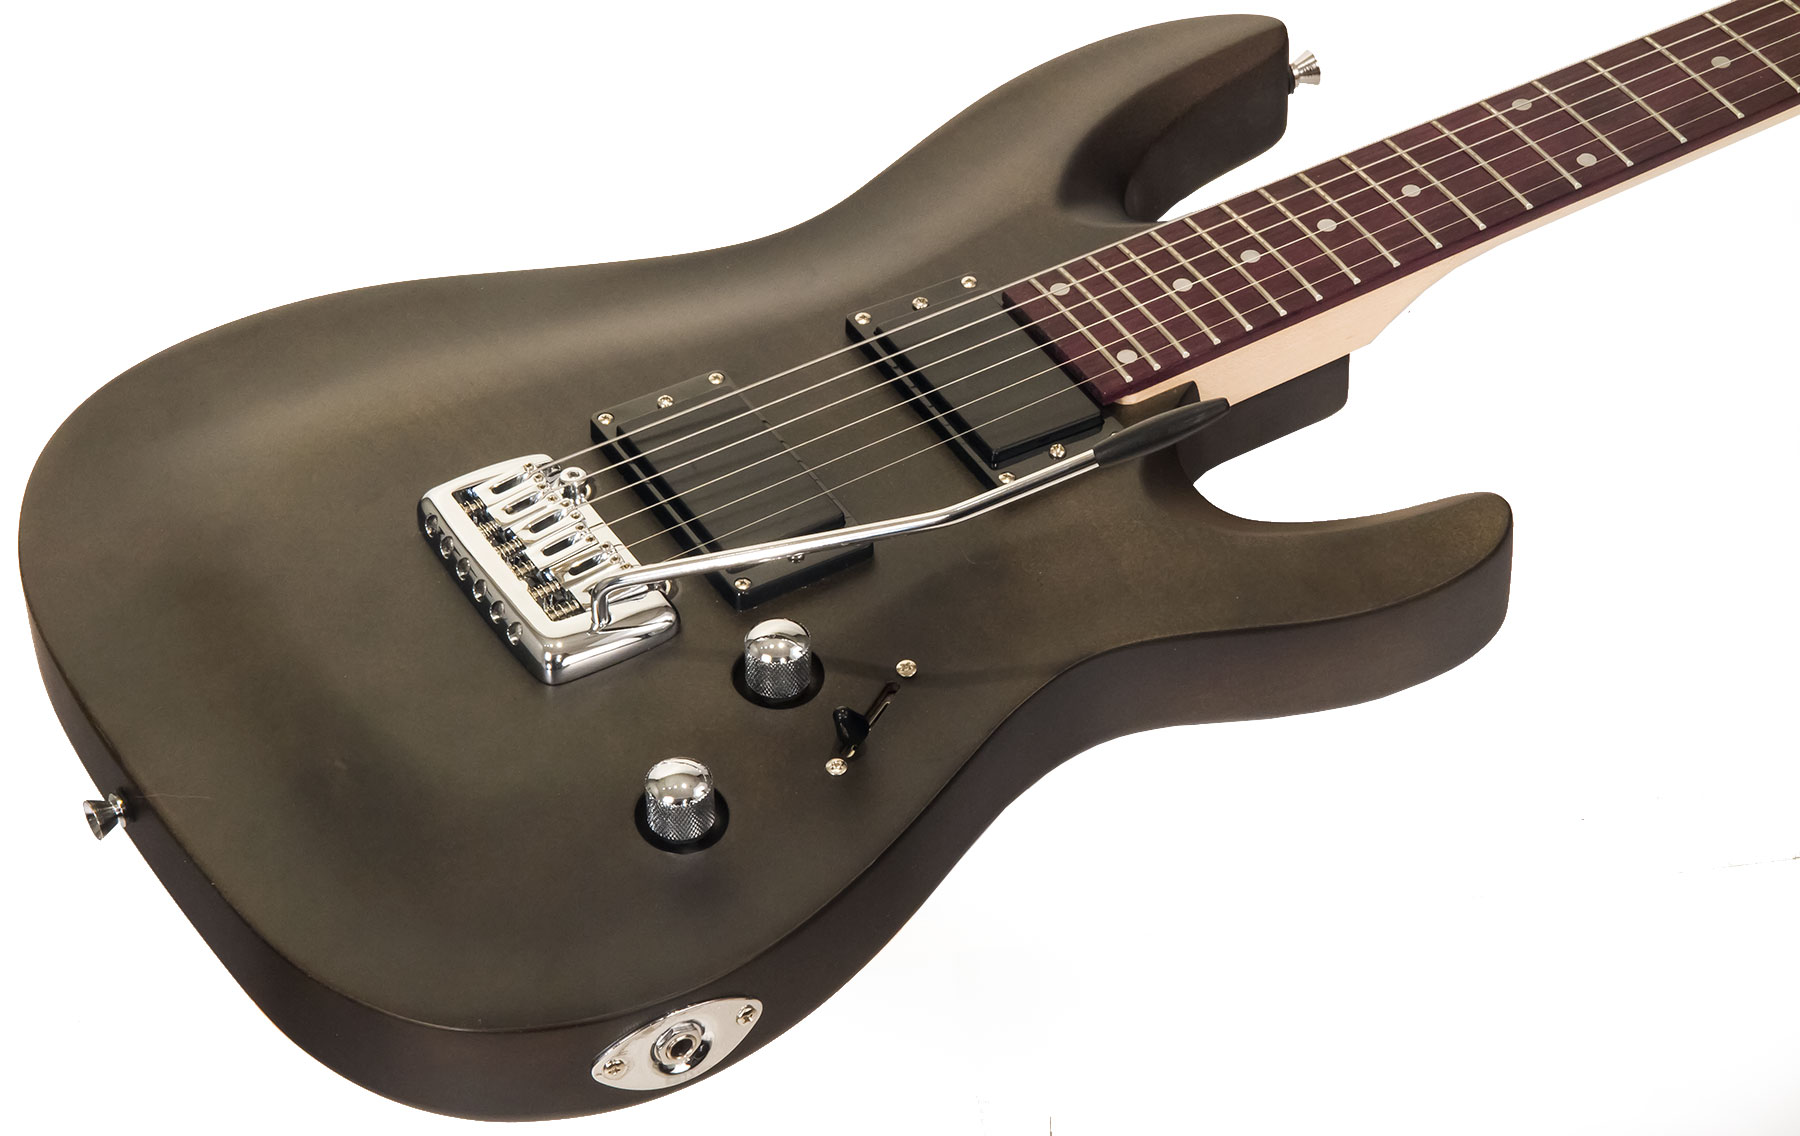 Eastone Metdc Hh Trem Pur - Black Satin - Str shape electric guitar - Variation 1